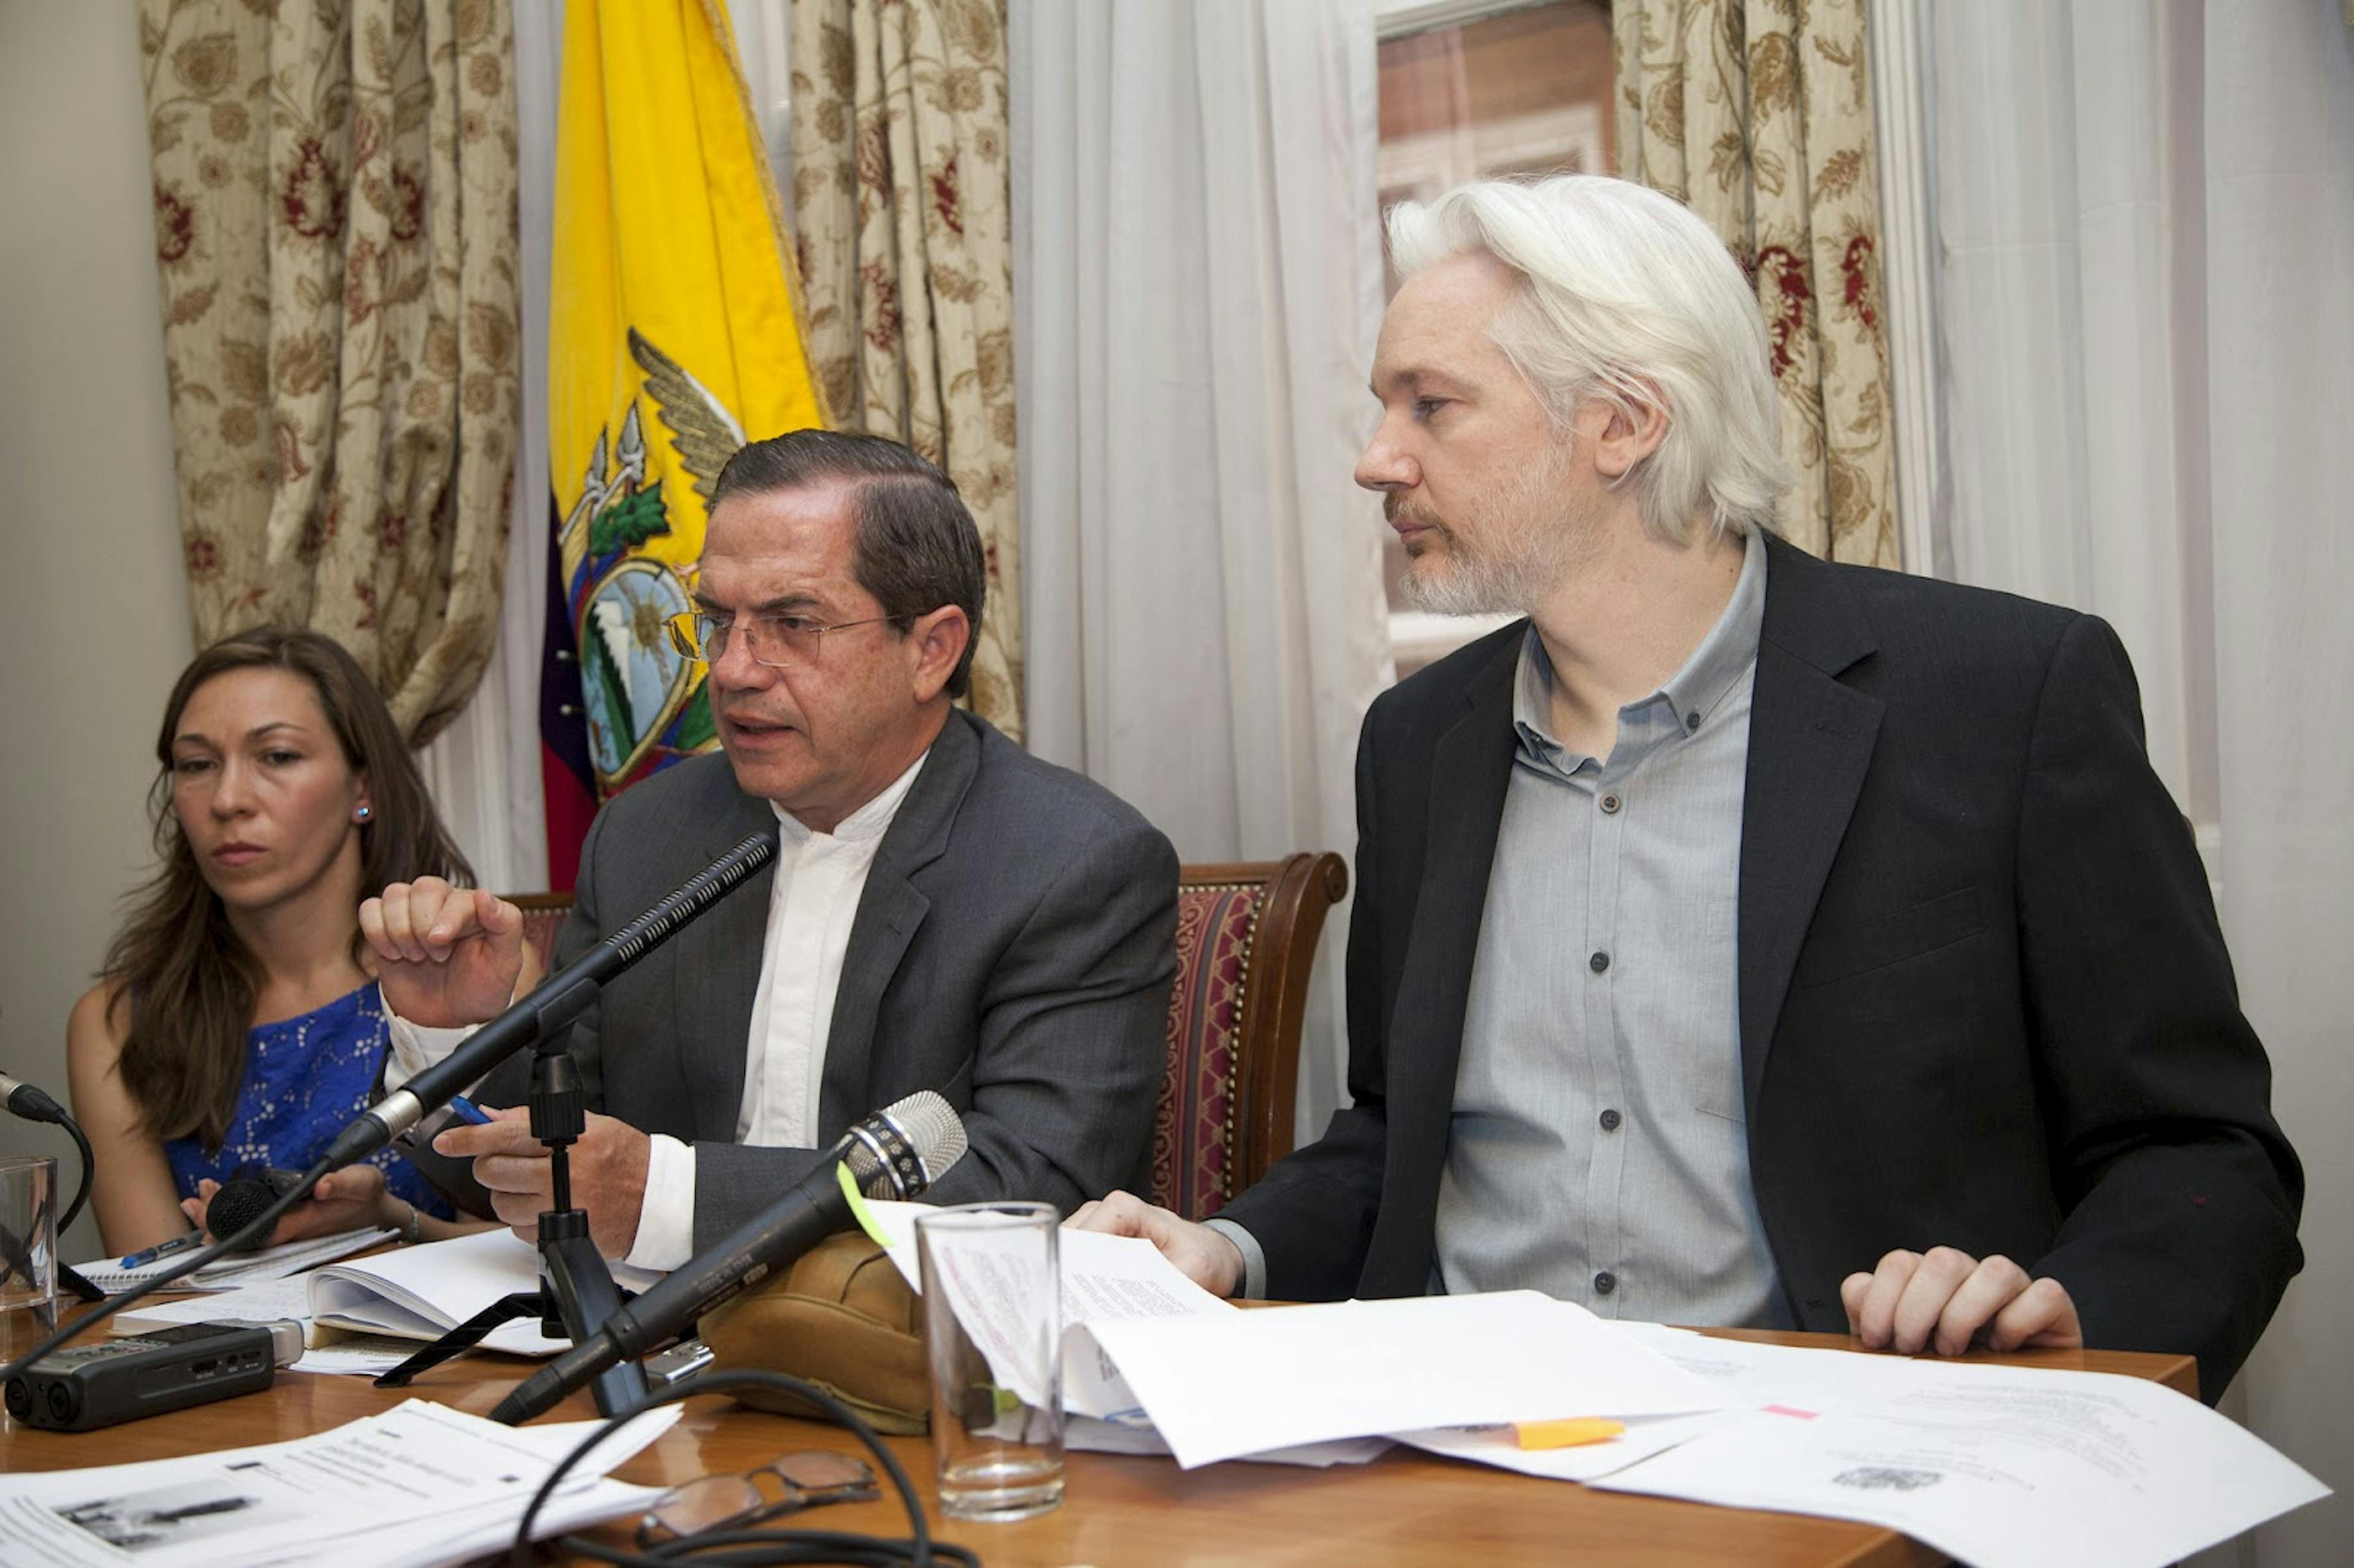 영국 주재 에콰도르 대사관에서 기자회견 중인 어산지(2014). Cancillería de Ecuador / Flickr의 이미지.